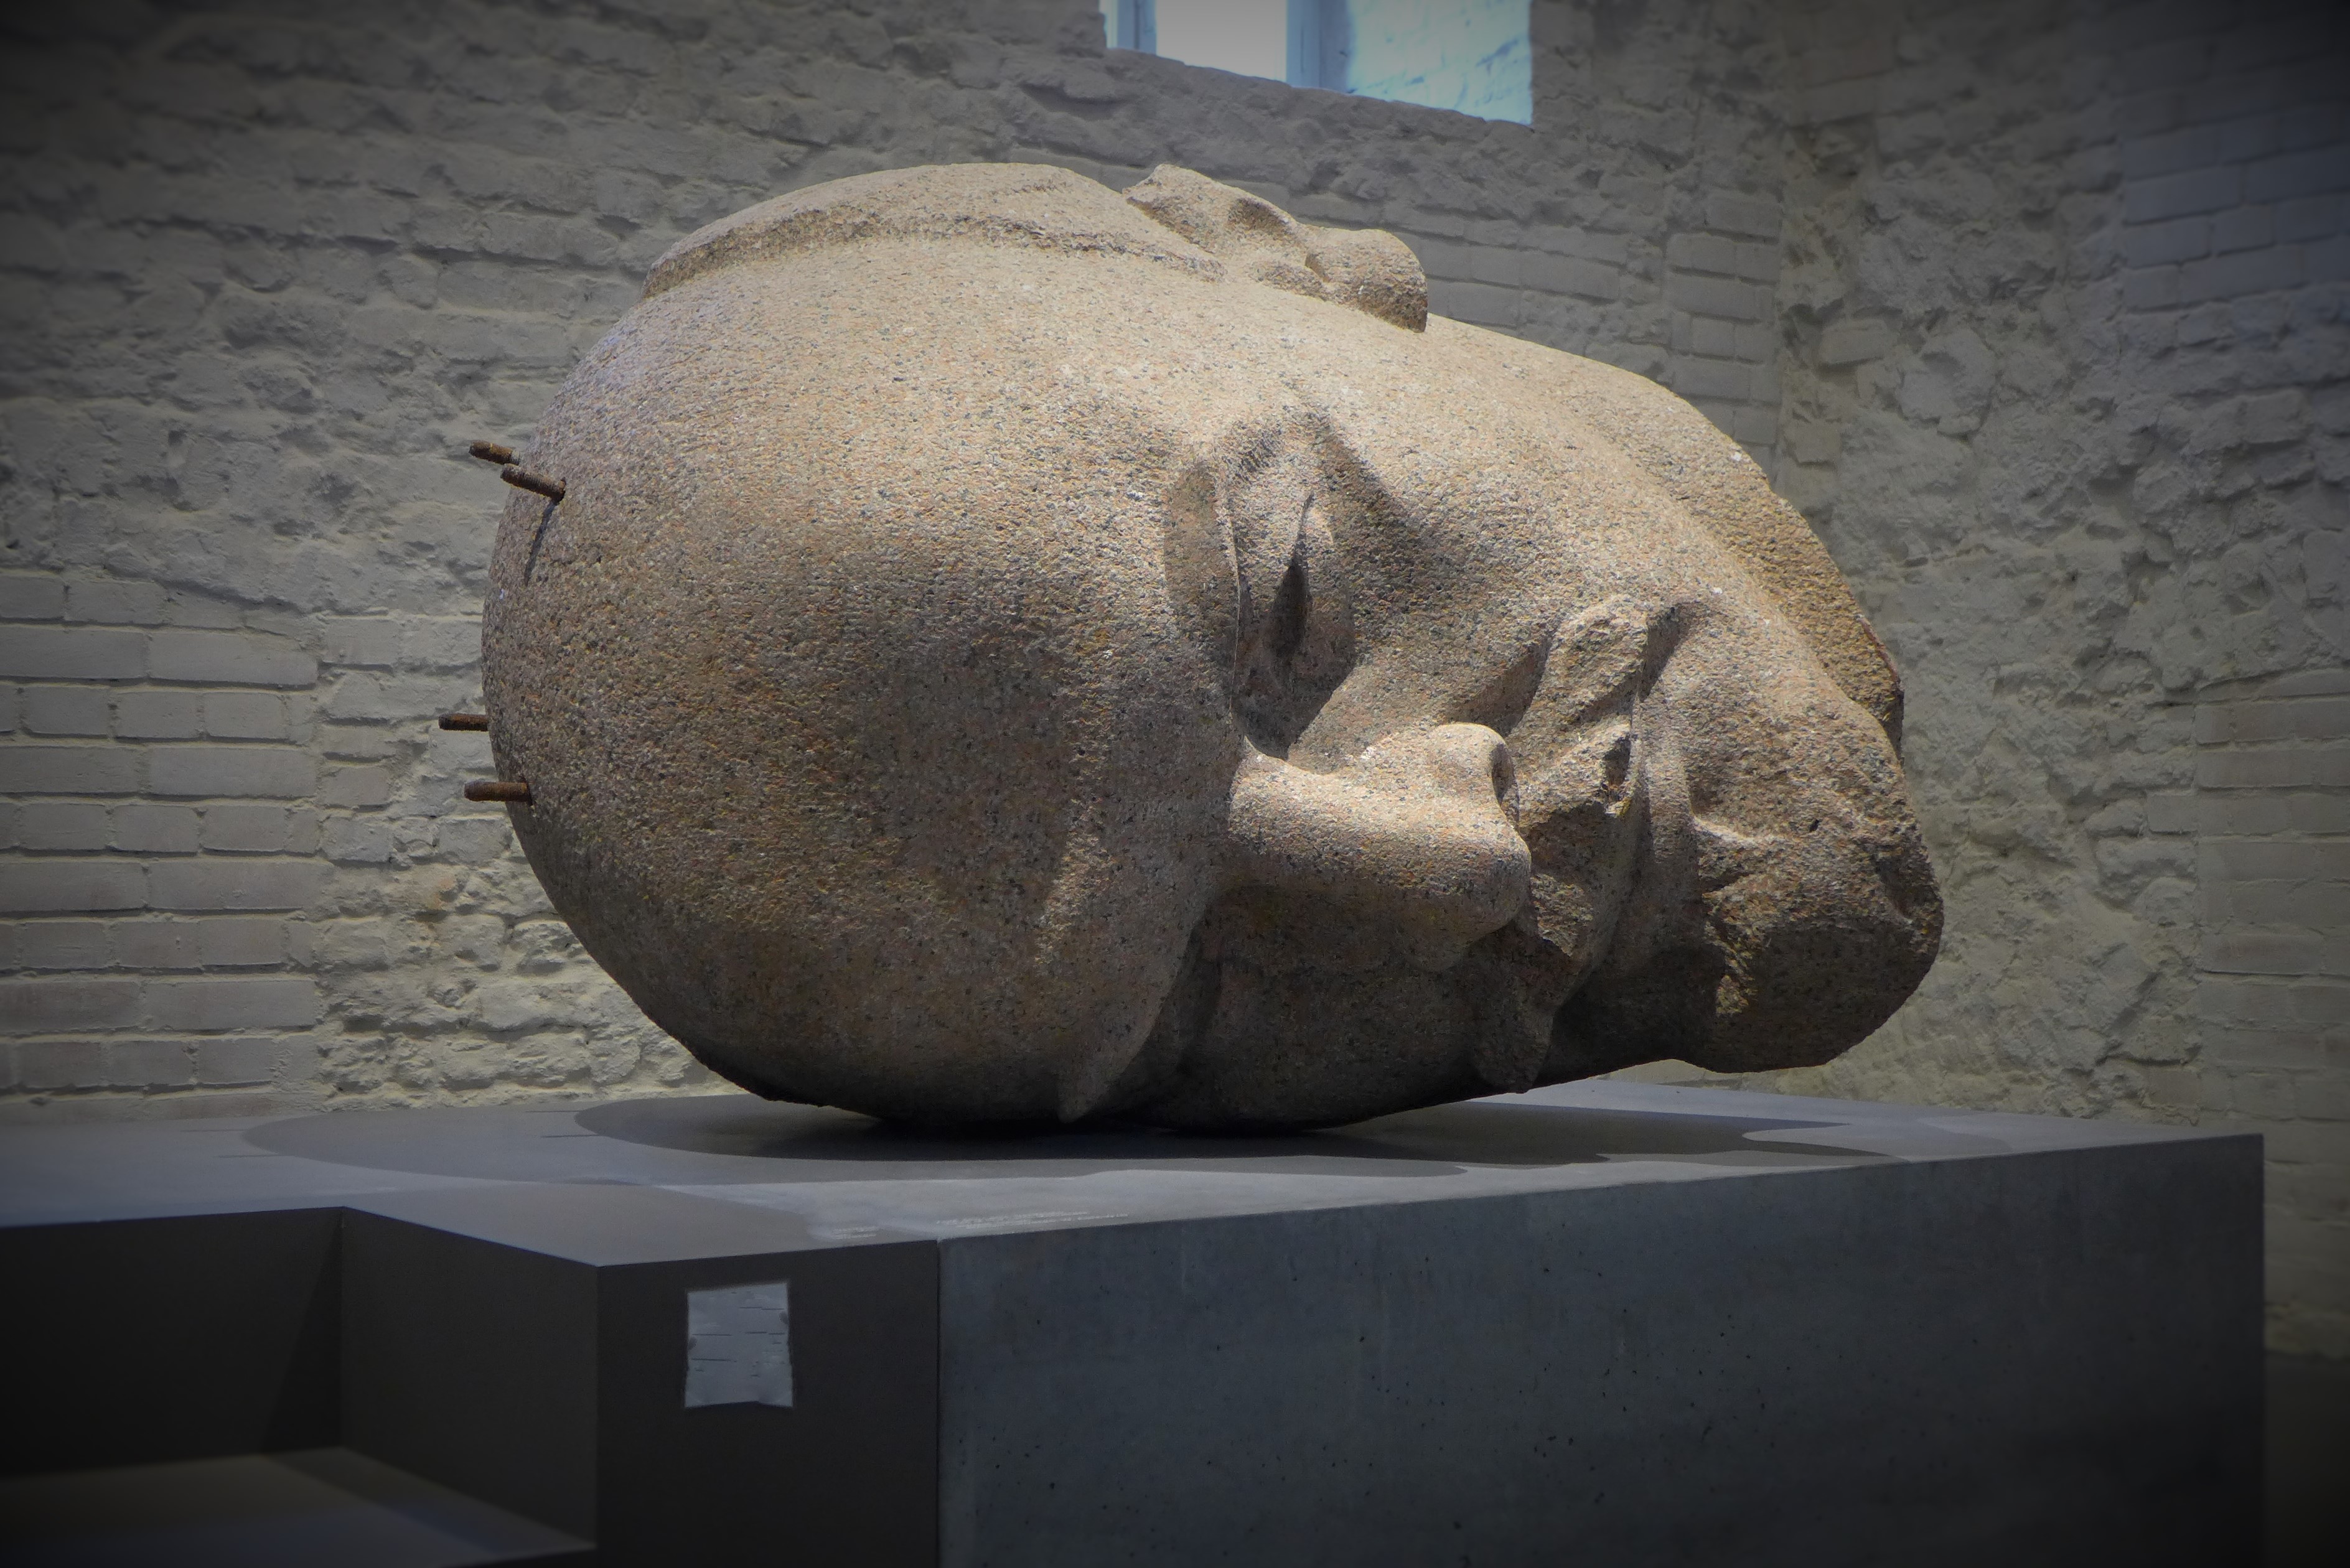 Голова Ленина с берлинского памятника, разобранного в 1991 году (скульптор Николай Томский). Эксгумация 2015 года. Выставка в цитатеди Шпандау, Берлин